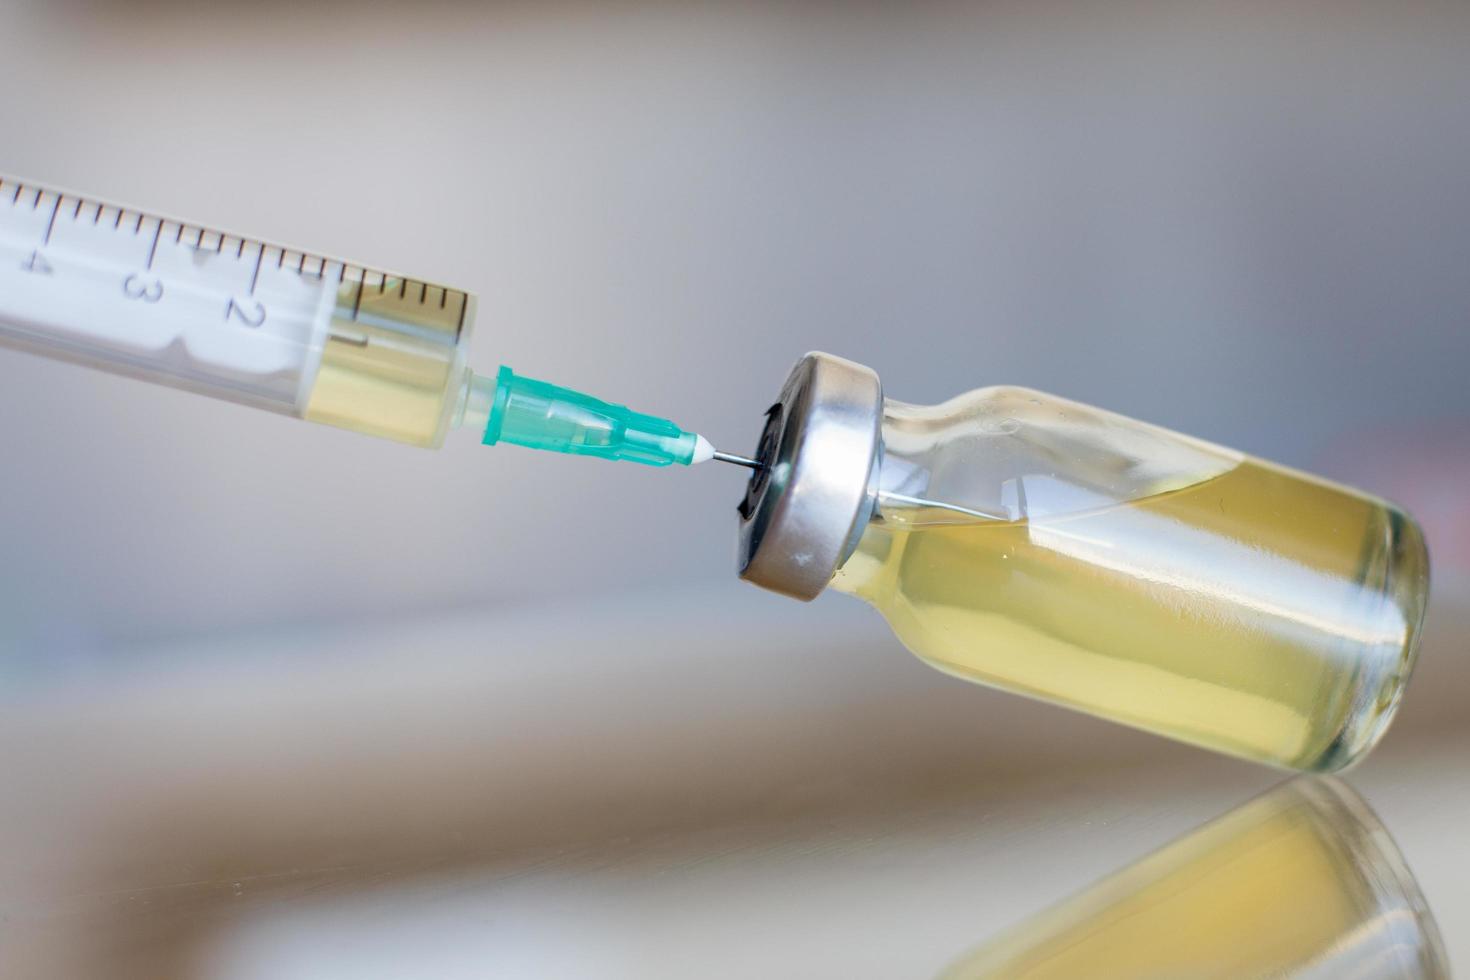 Fläschchen gefüllt mit flüssigem Impfstoff im medizinischen Labor mit Spritze. medizinische ampulle und spritze auf der glasoberfläche foto